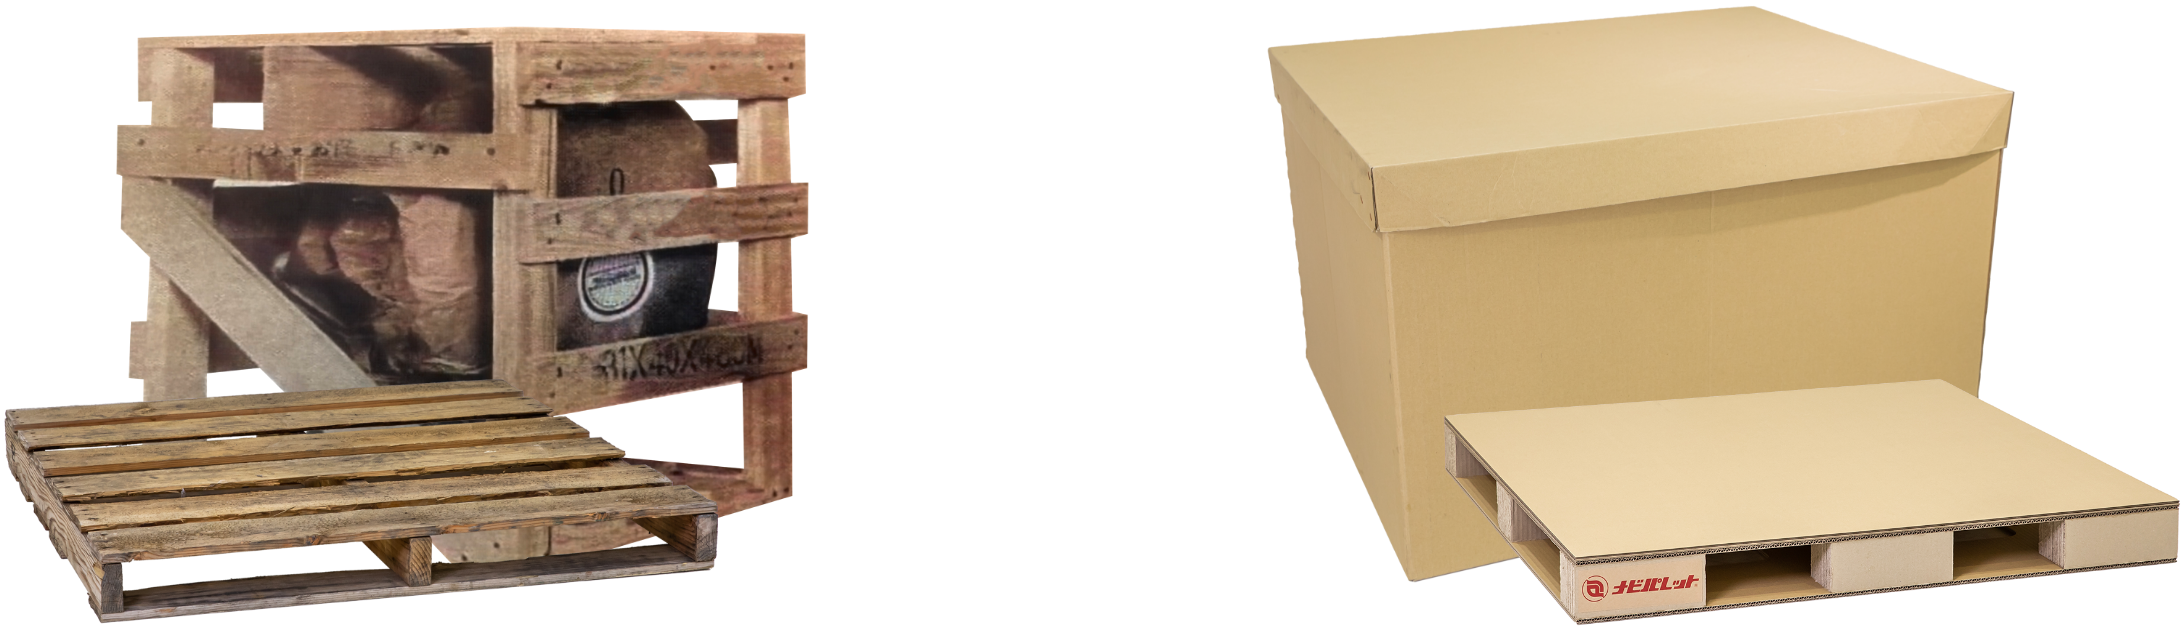 木箱と木製パレット → 強化段ボール箱と強化段ボールパレット